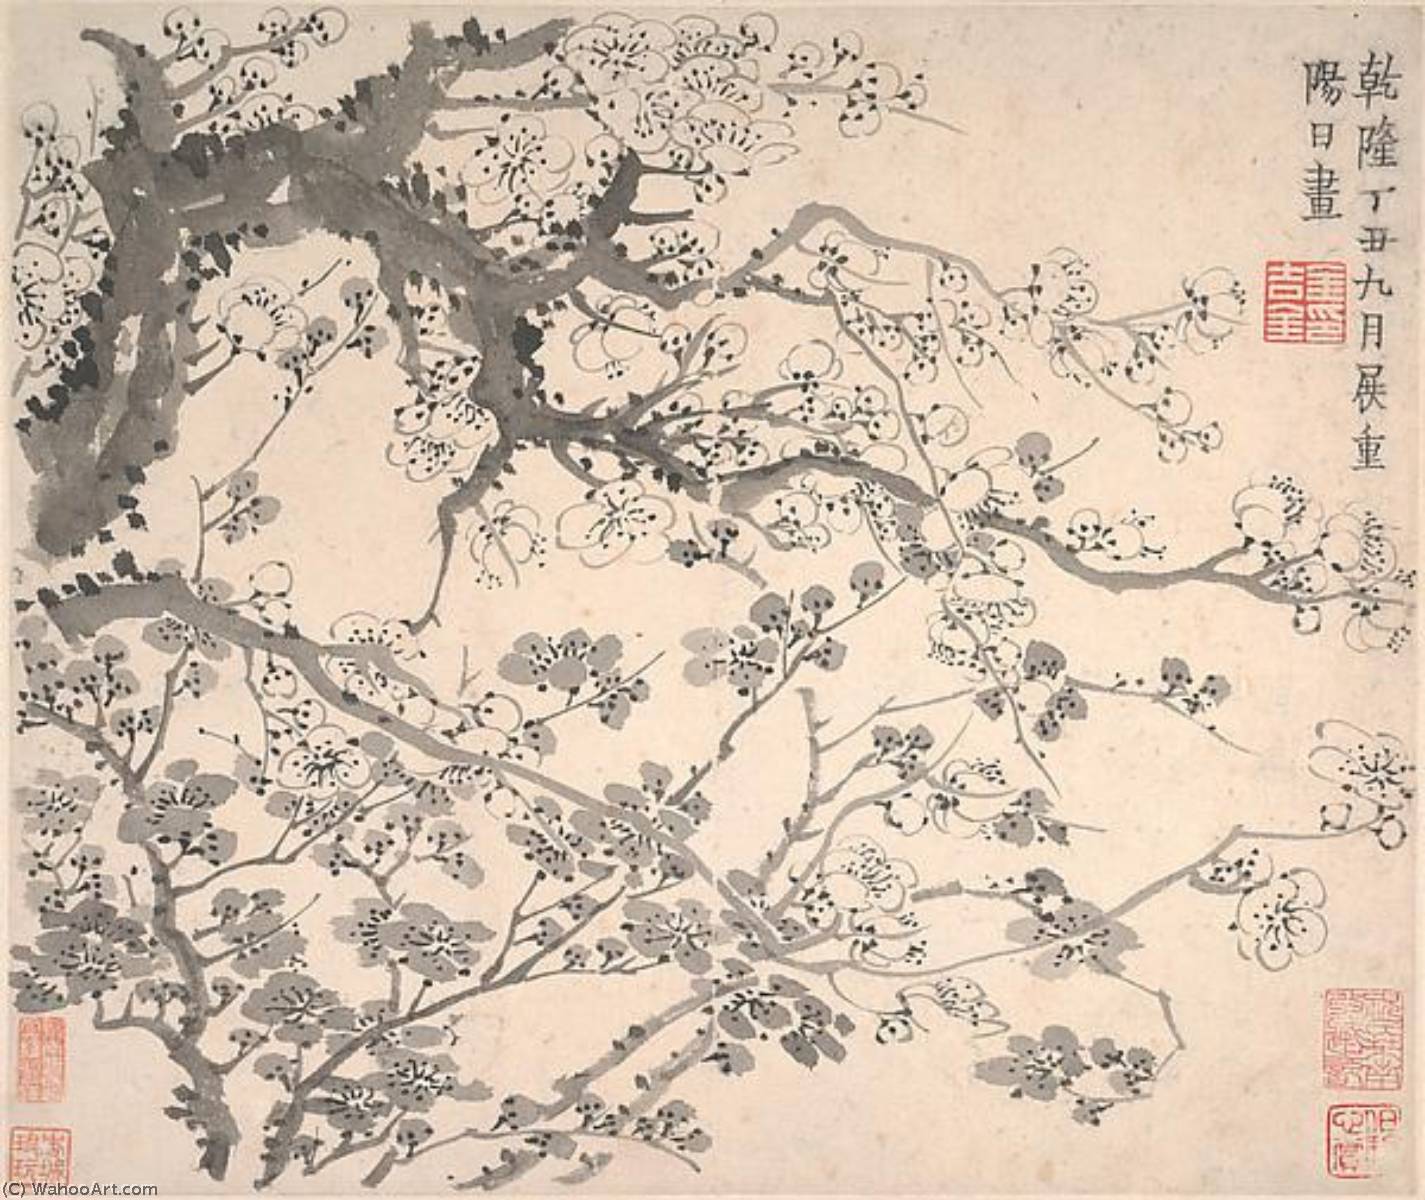 WikiOO.org - Enciklopedija likovnih umjetnosti - Slikarstvo, umjetnička djela Jin Nong - 清 金農 梅花圖 冊 Plum Blossoms